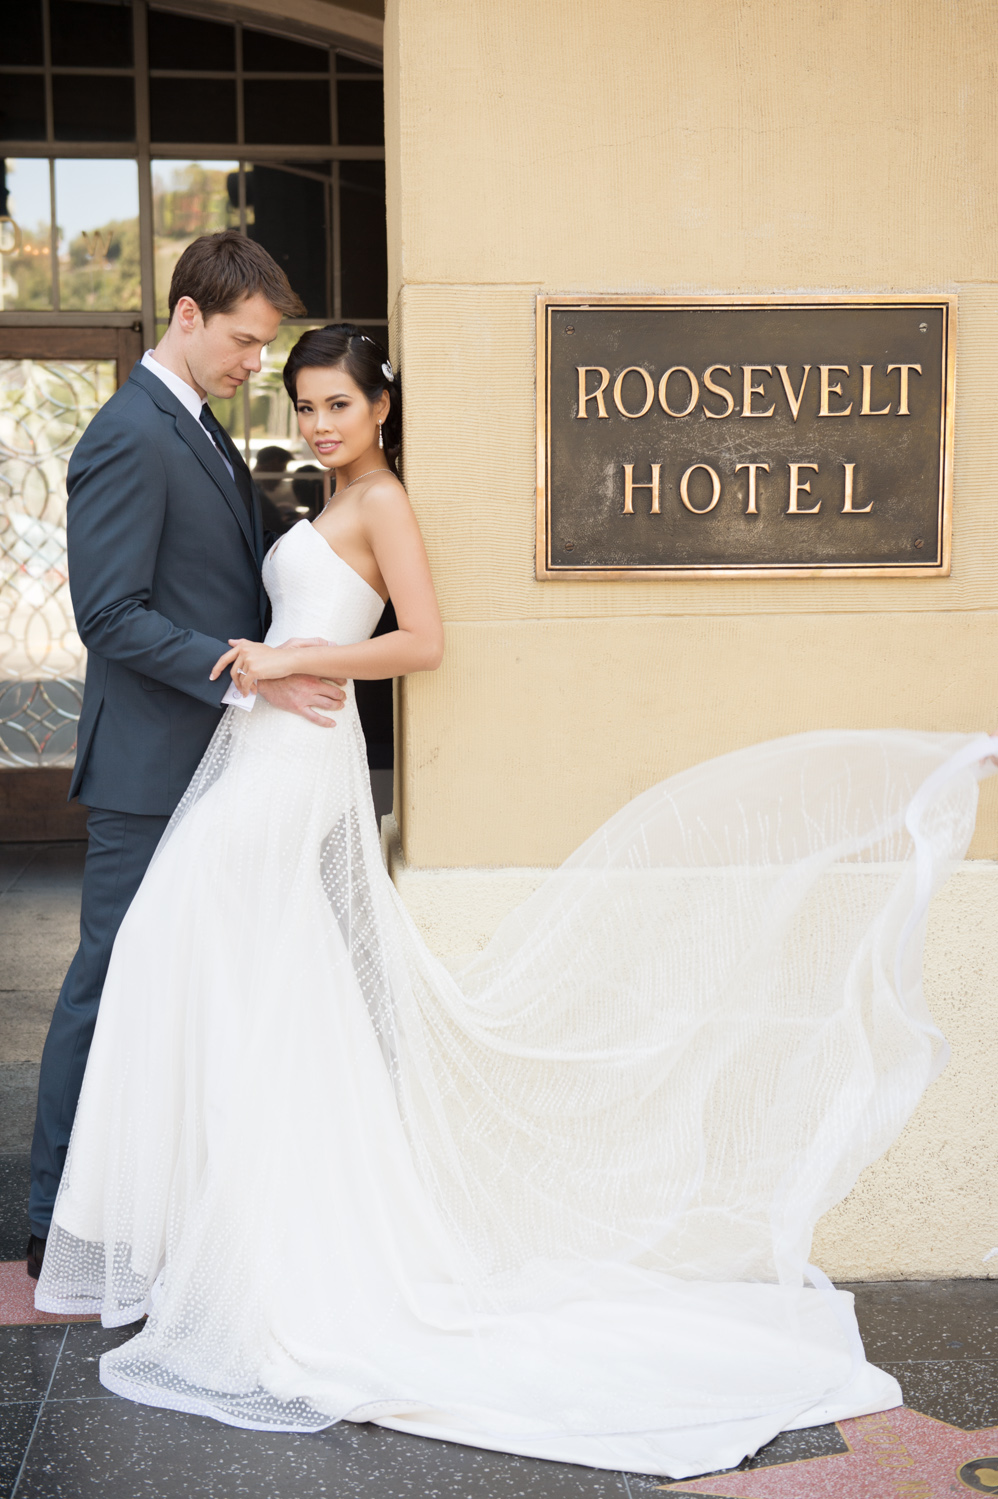 Roosevelt Hotel Bridal Editorial